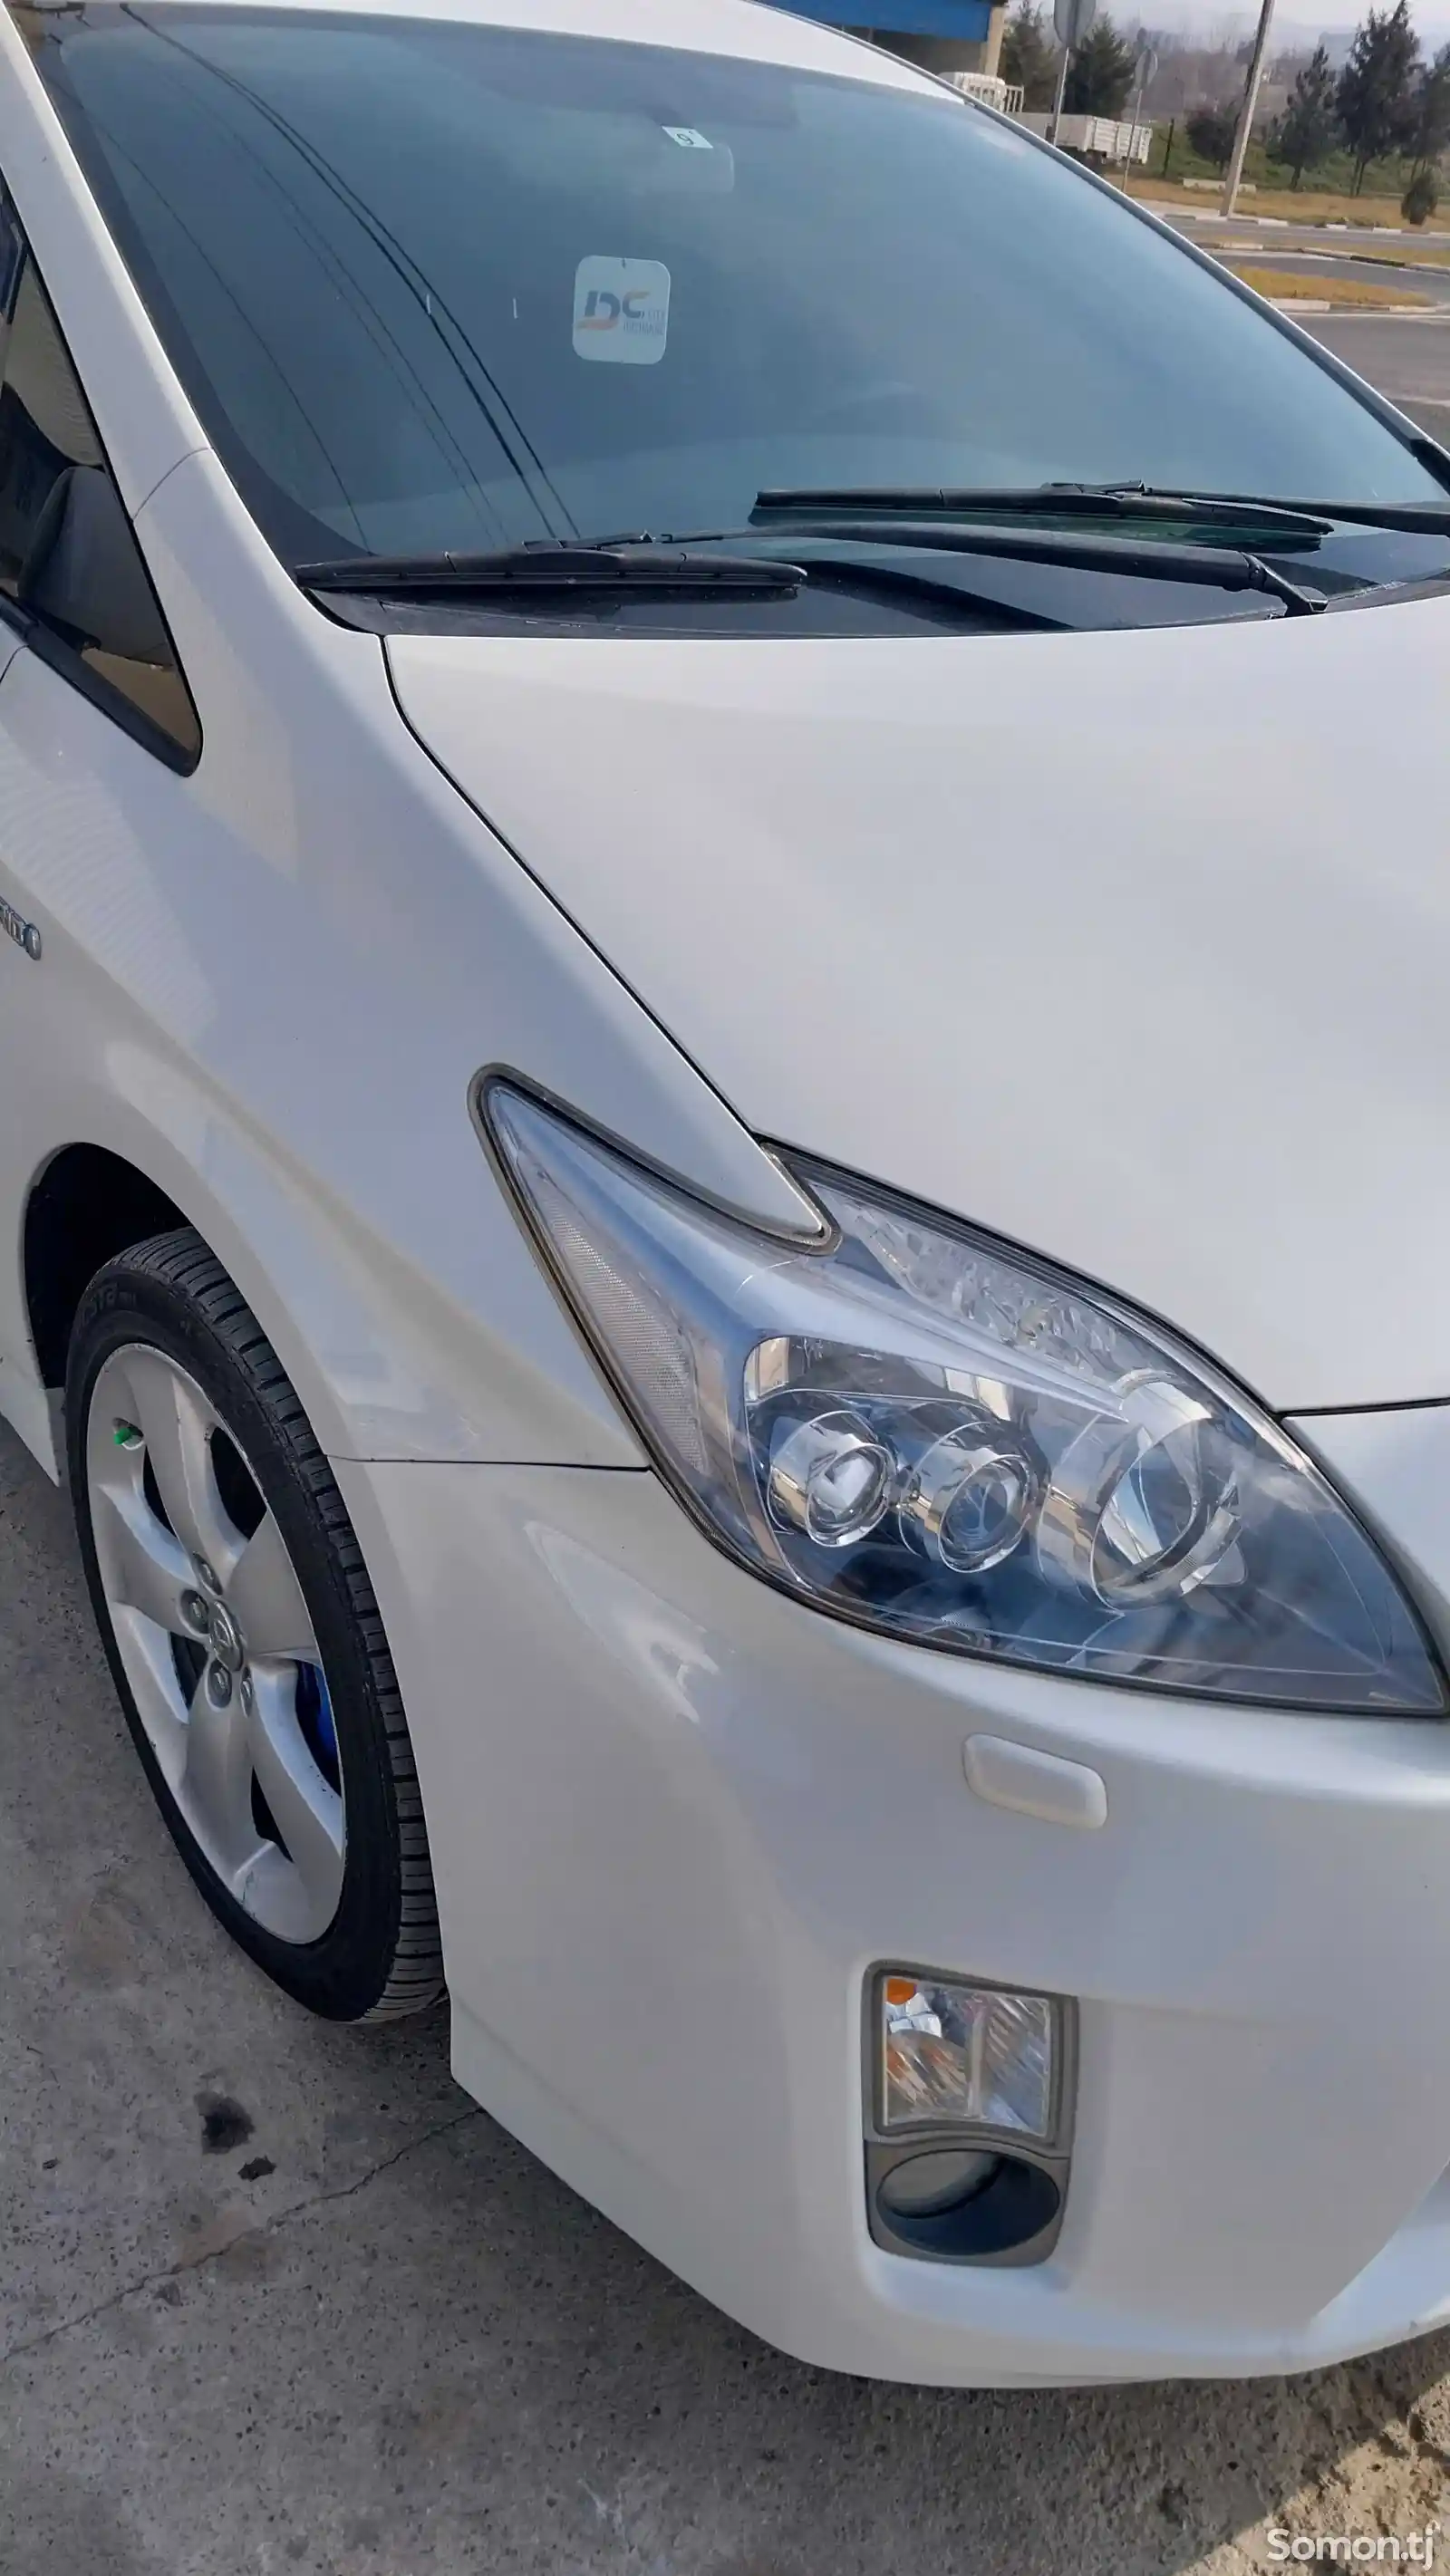 Toyota Prius, 2011-2